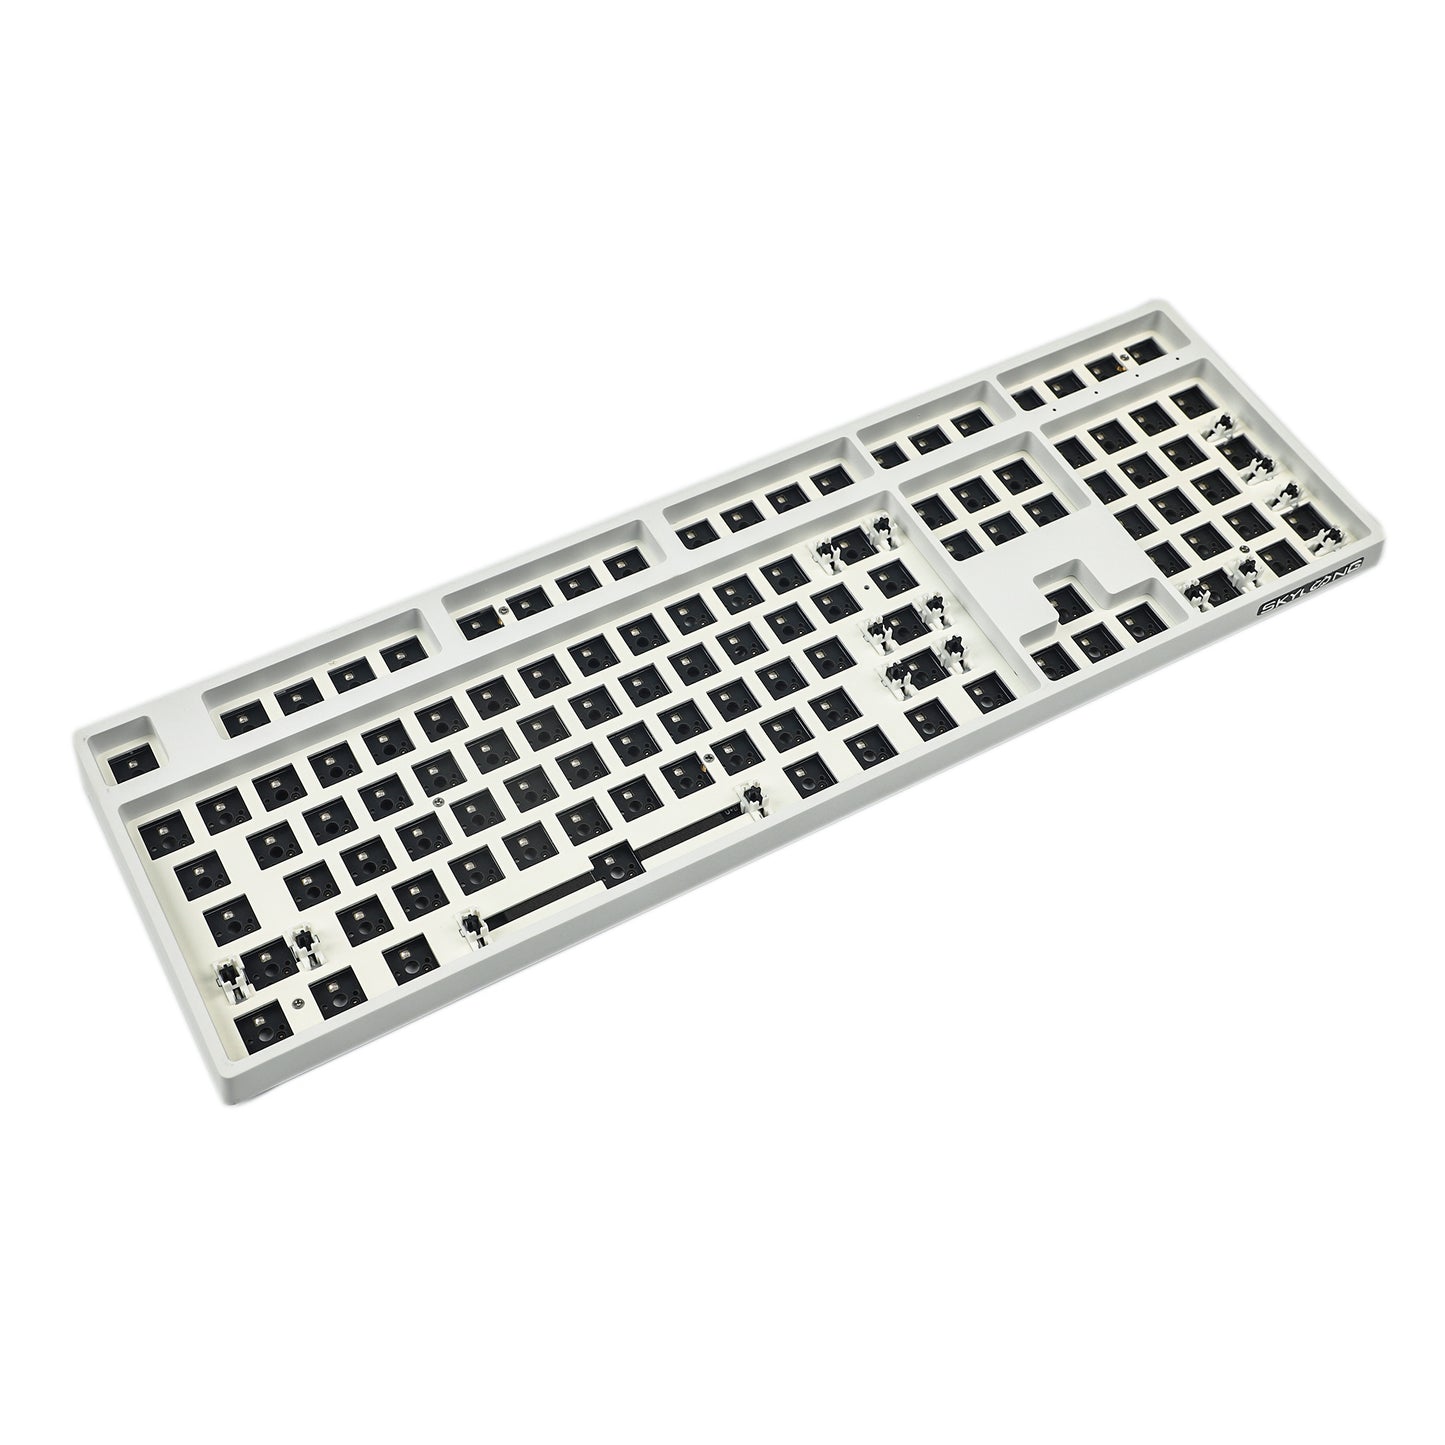 SKYLOONG GK108 Hot Swap Gaming Mechanical Keyboard Kit RGB